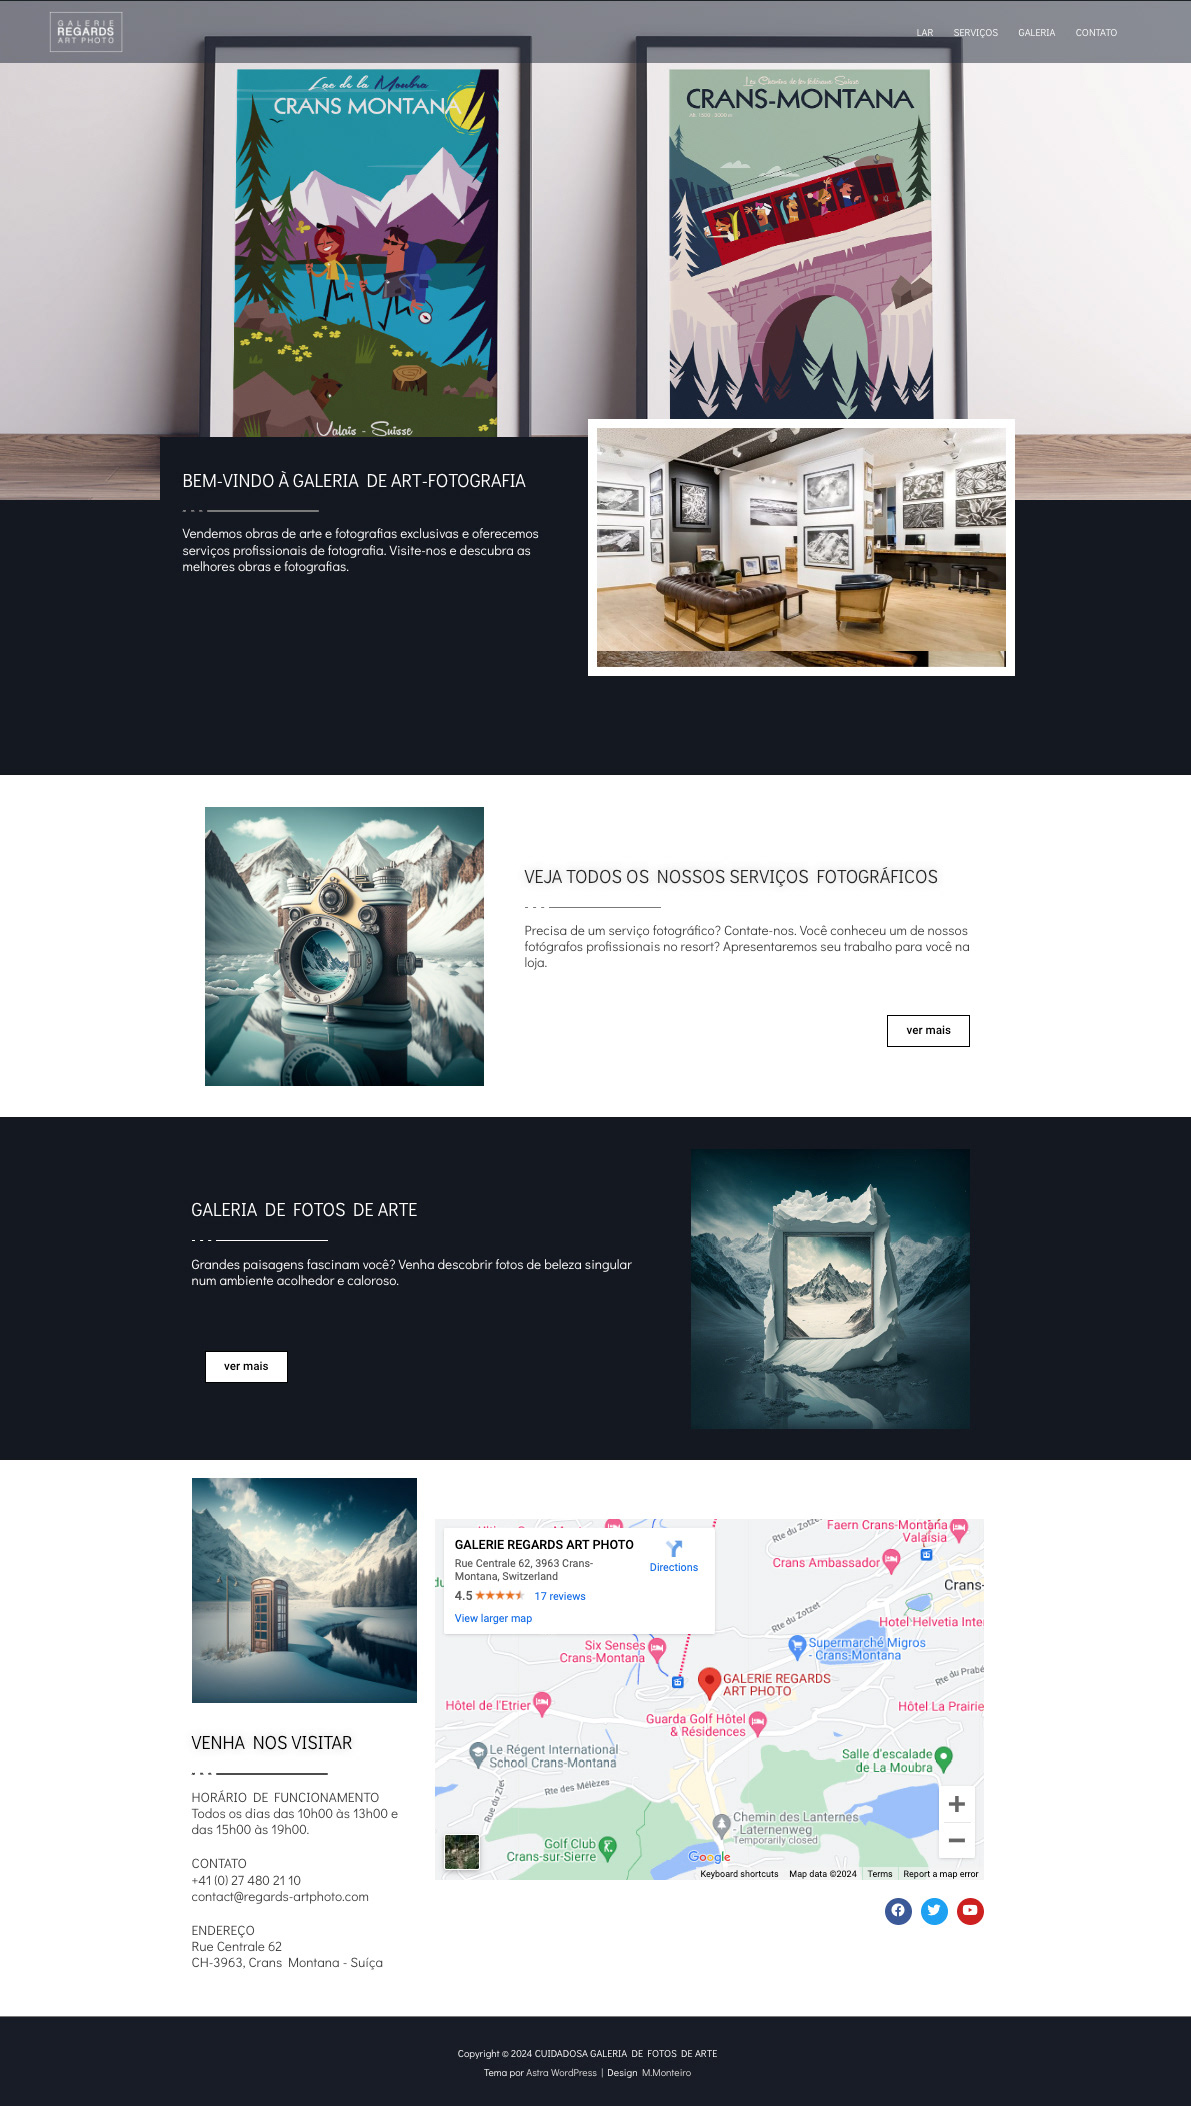 Webdesign Website Design designer Layout Design UI/UX art photo Internet